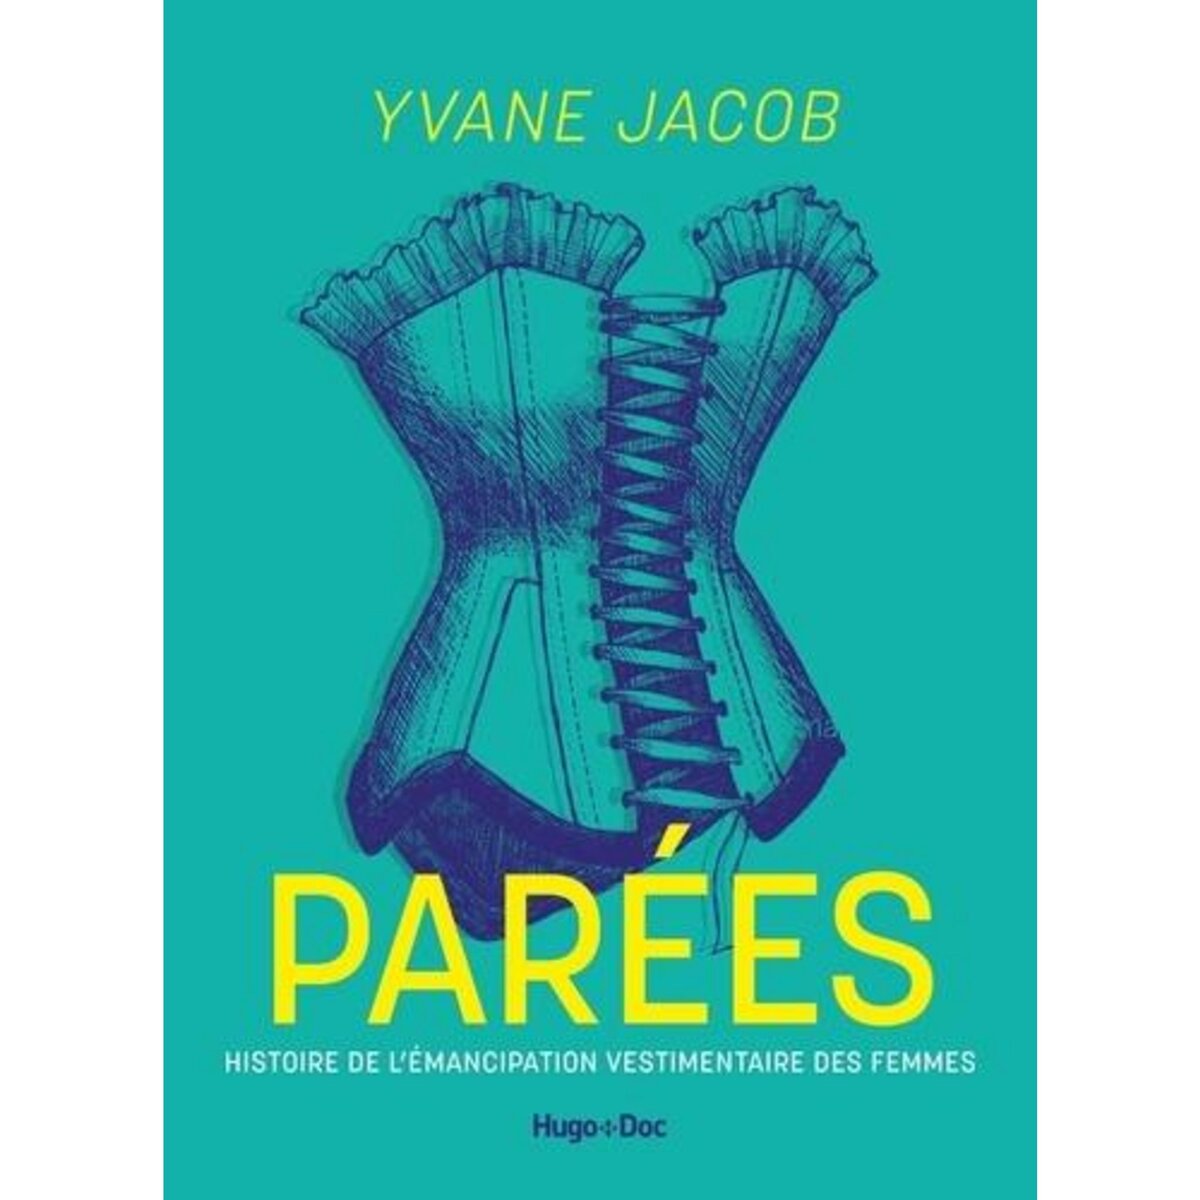  PAREES. ENQUETE SUR L'EMANCIPATION VESTIMENTAIRE DES FEMMES, Jacob Yvane